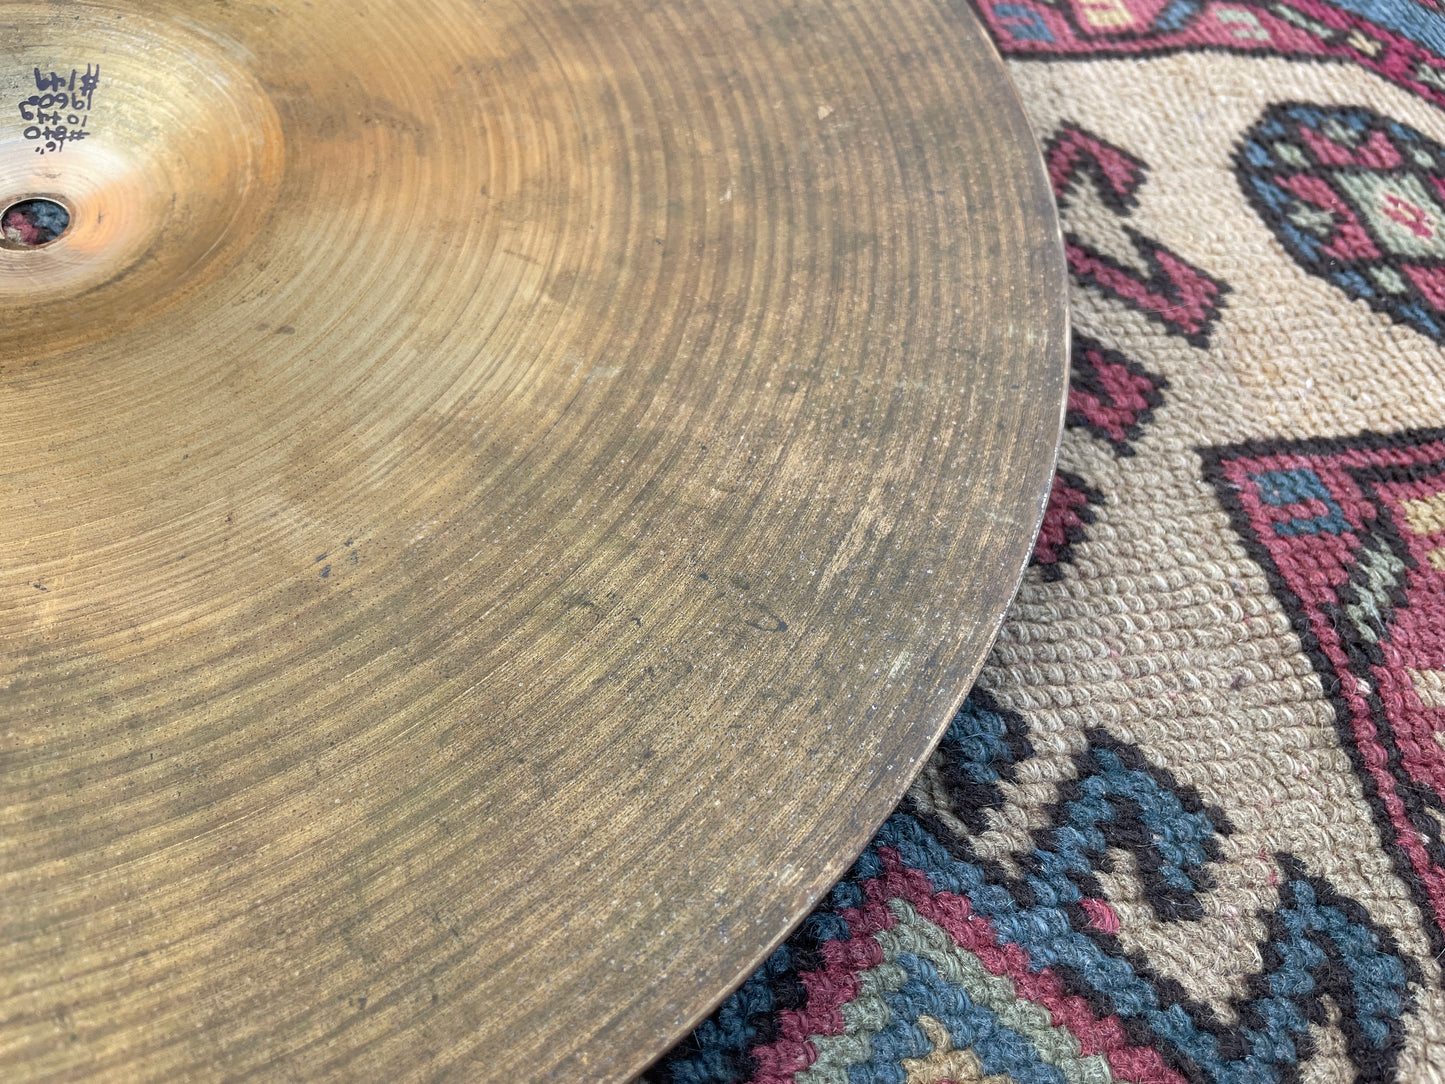 16" Zildjian A 1960s Crash Cymbal 1044g #840